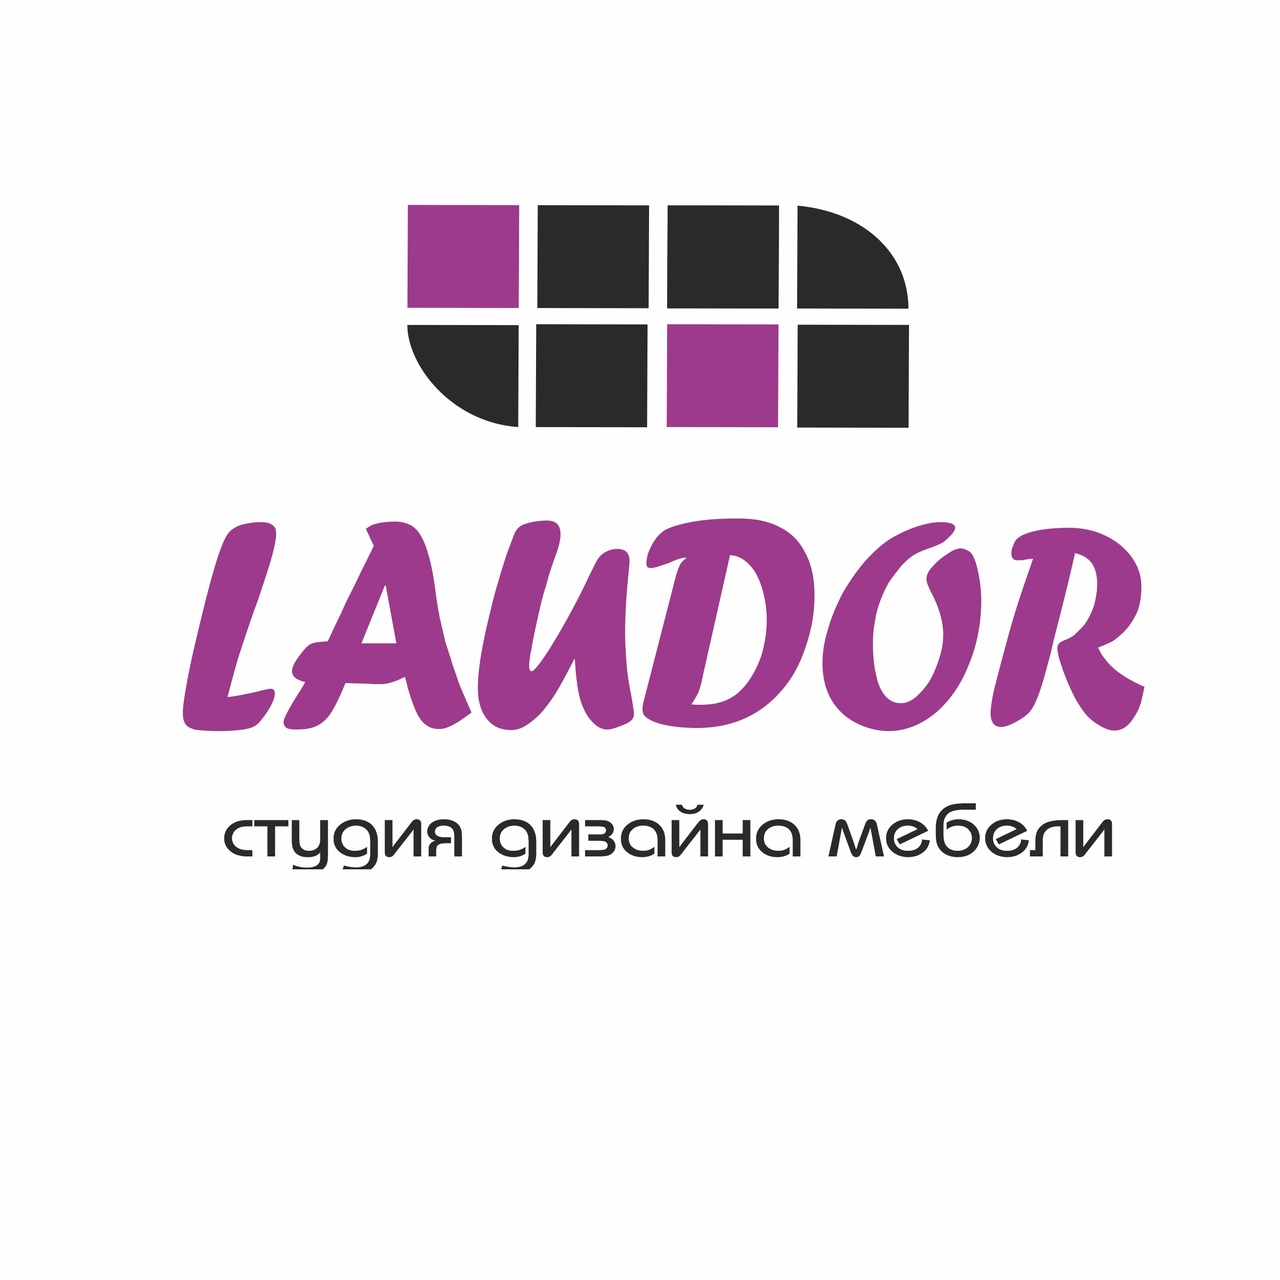 Laudor